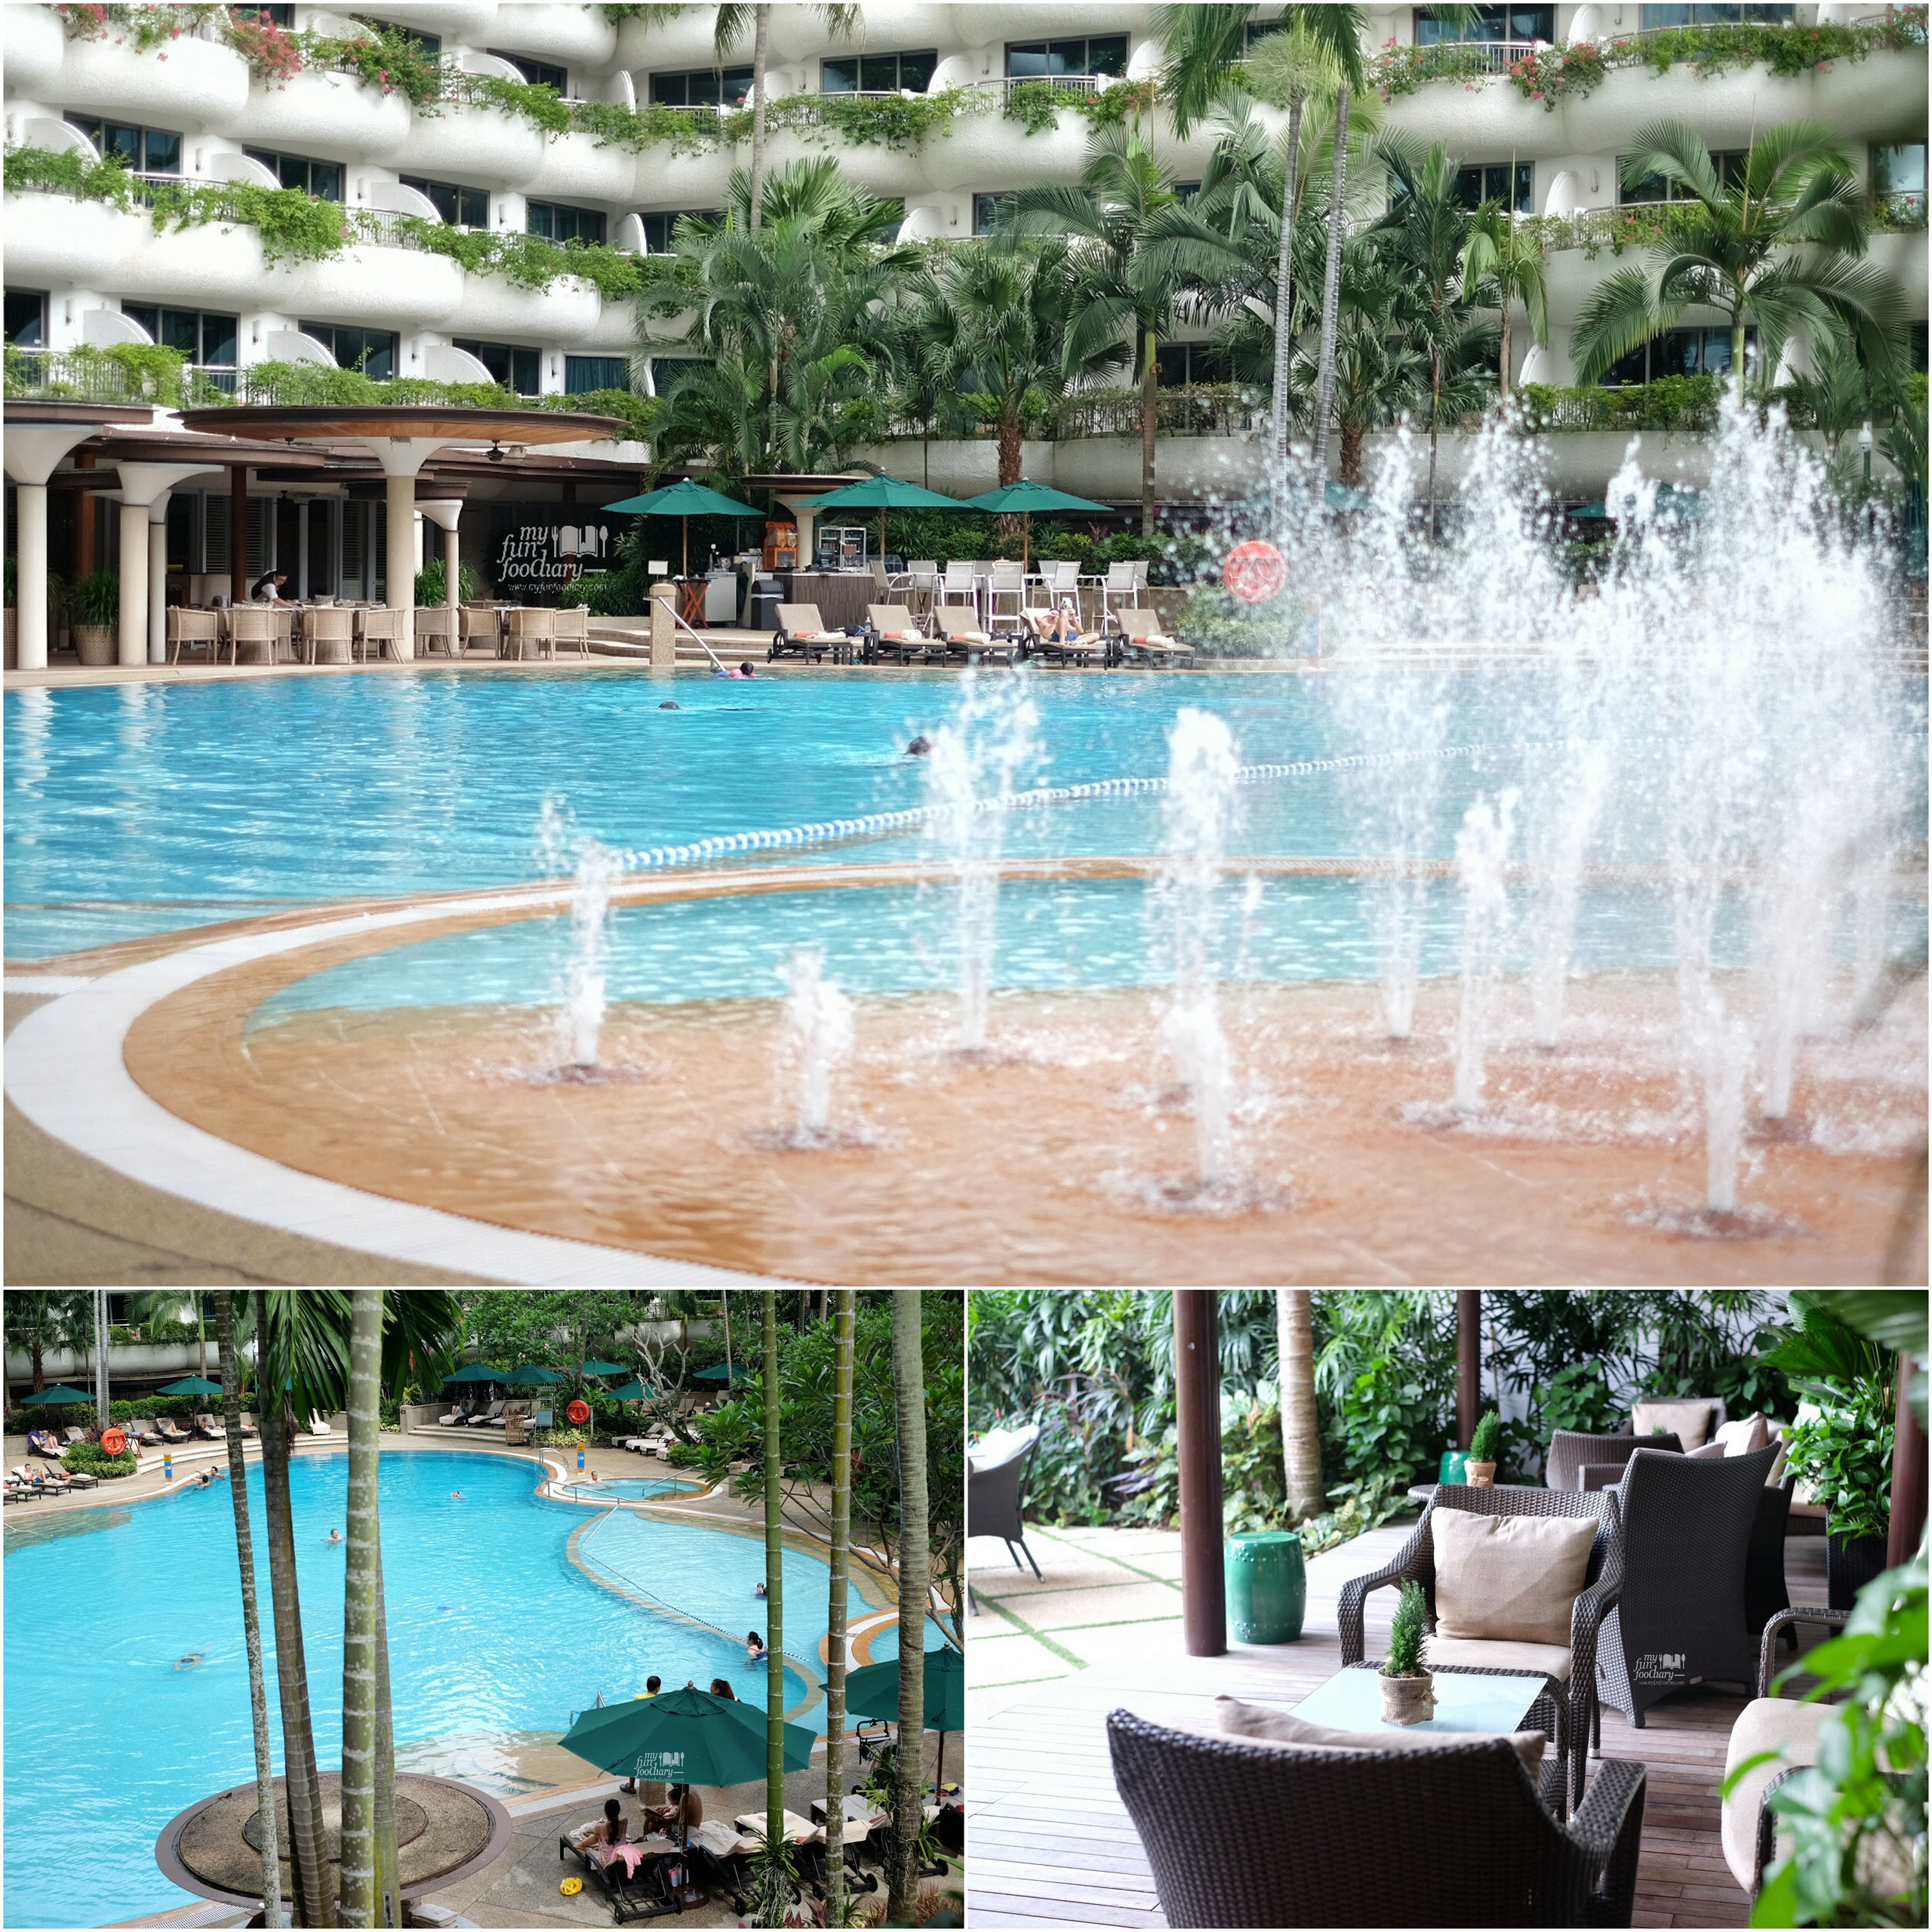 Beautiful Swimming Pool at Shangri-La Singapore by Myfunfoodiary